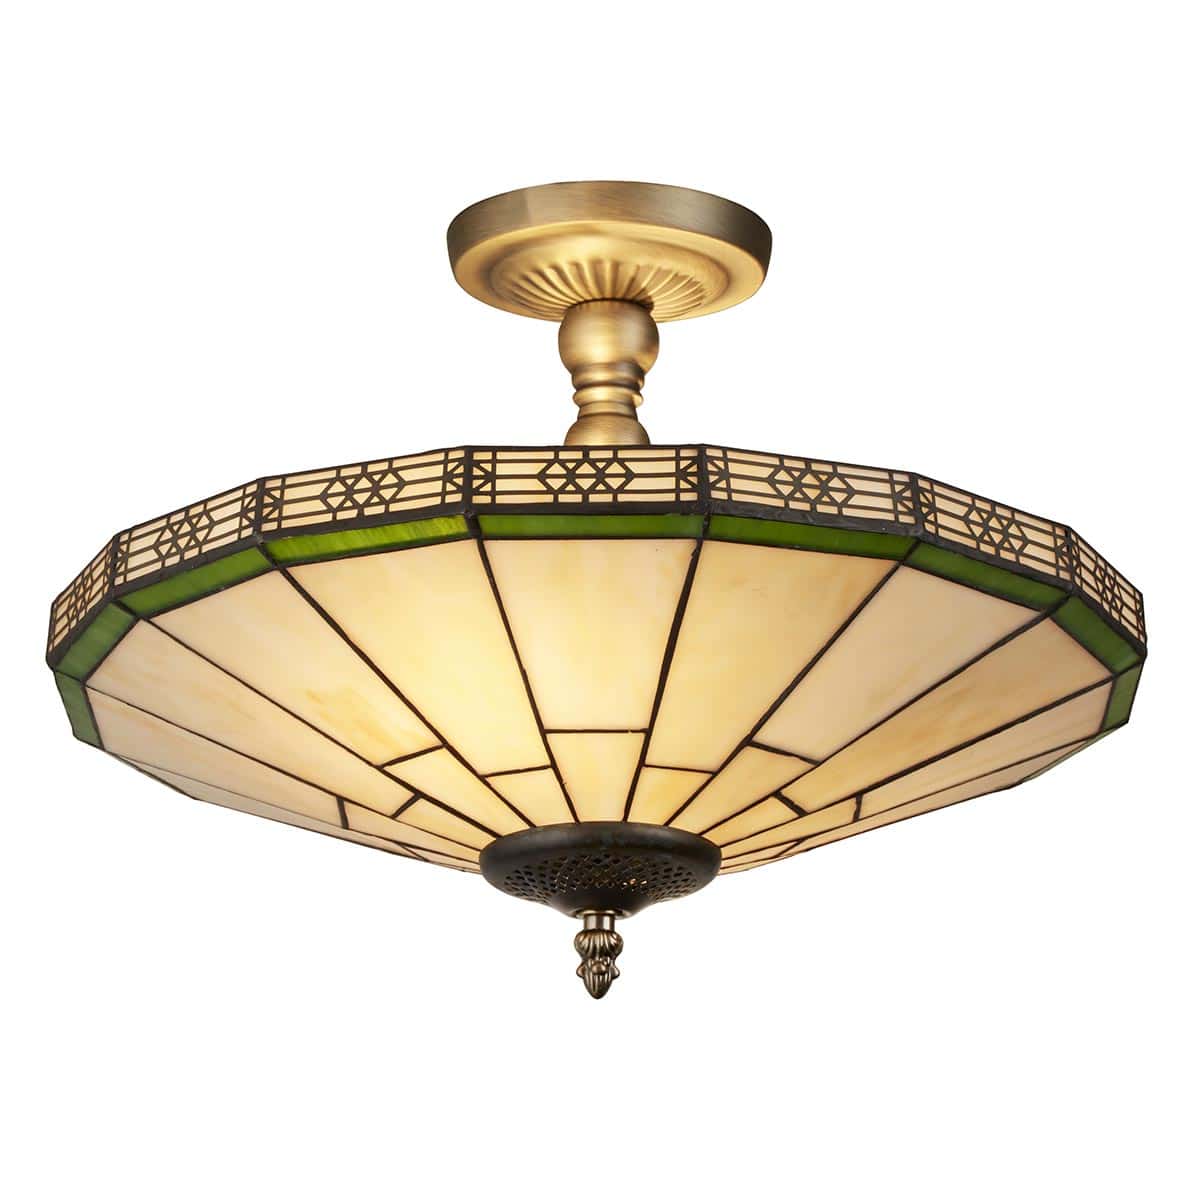 New York Handmade Tiffany Art Glass 2 Lamp Semi Flush Ceiling Light